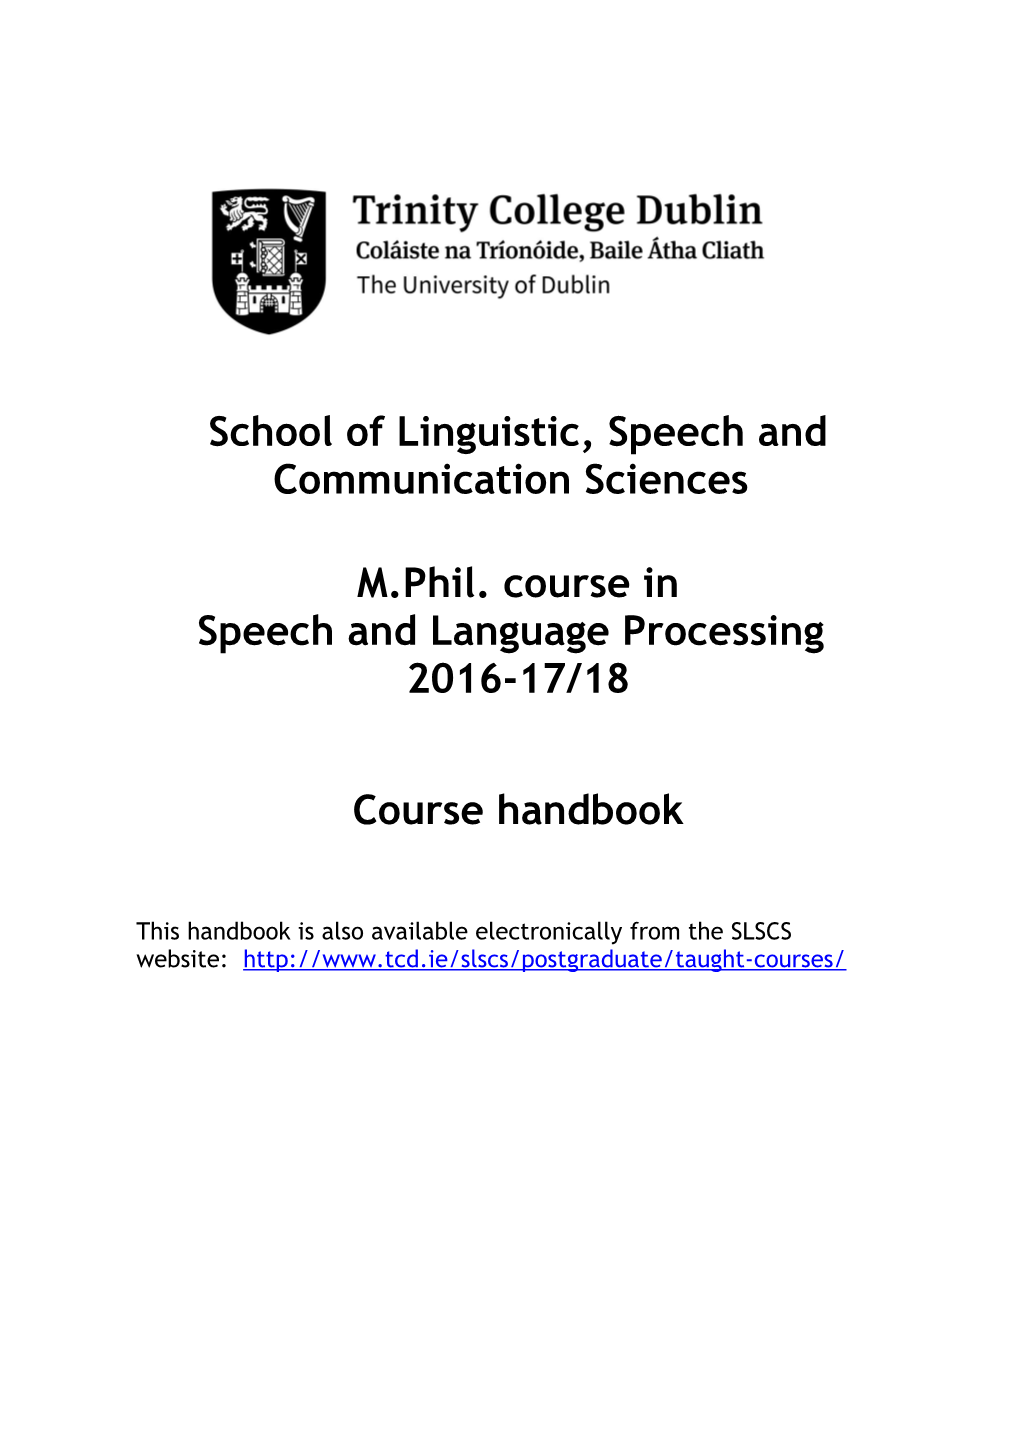 M.Phil. Course in Speechandlanguage Processing